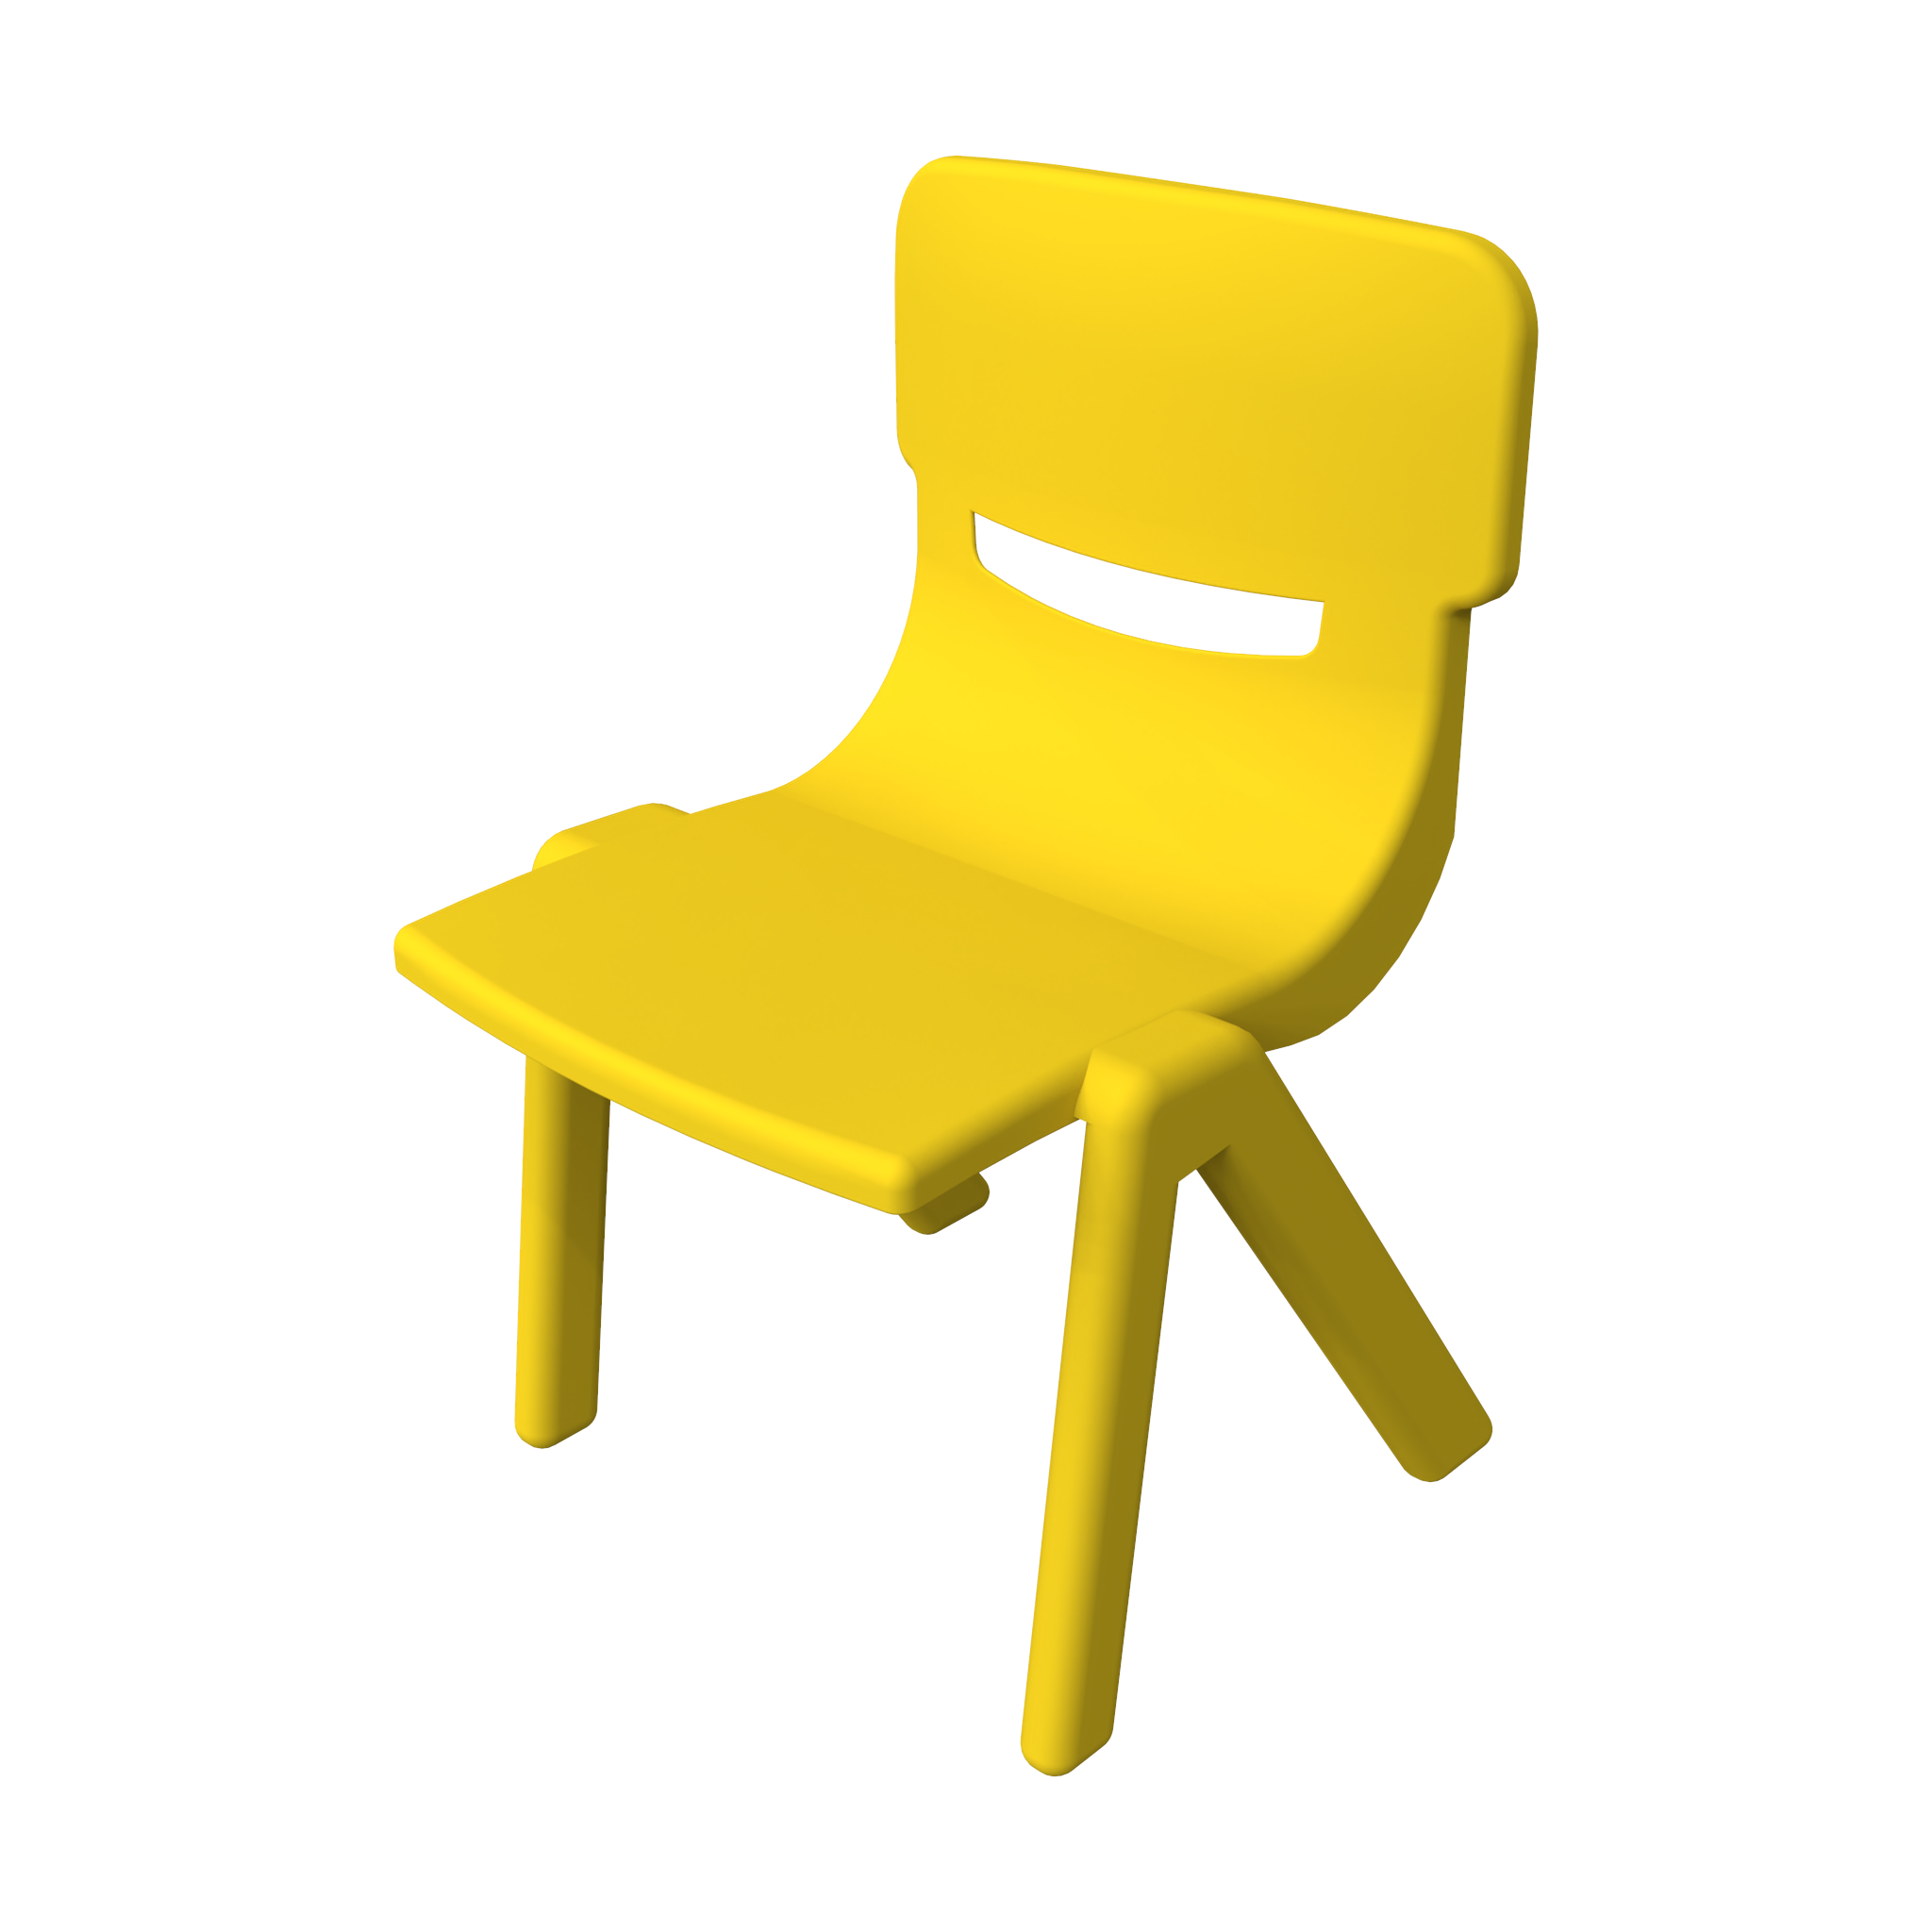 To zdjęcie pokazuje Meble dziecięce Fun chair yellow